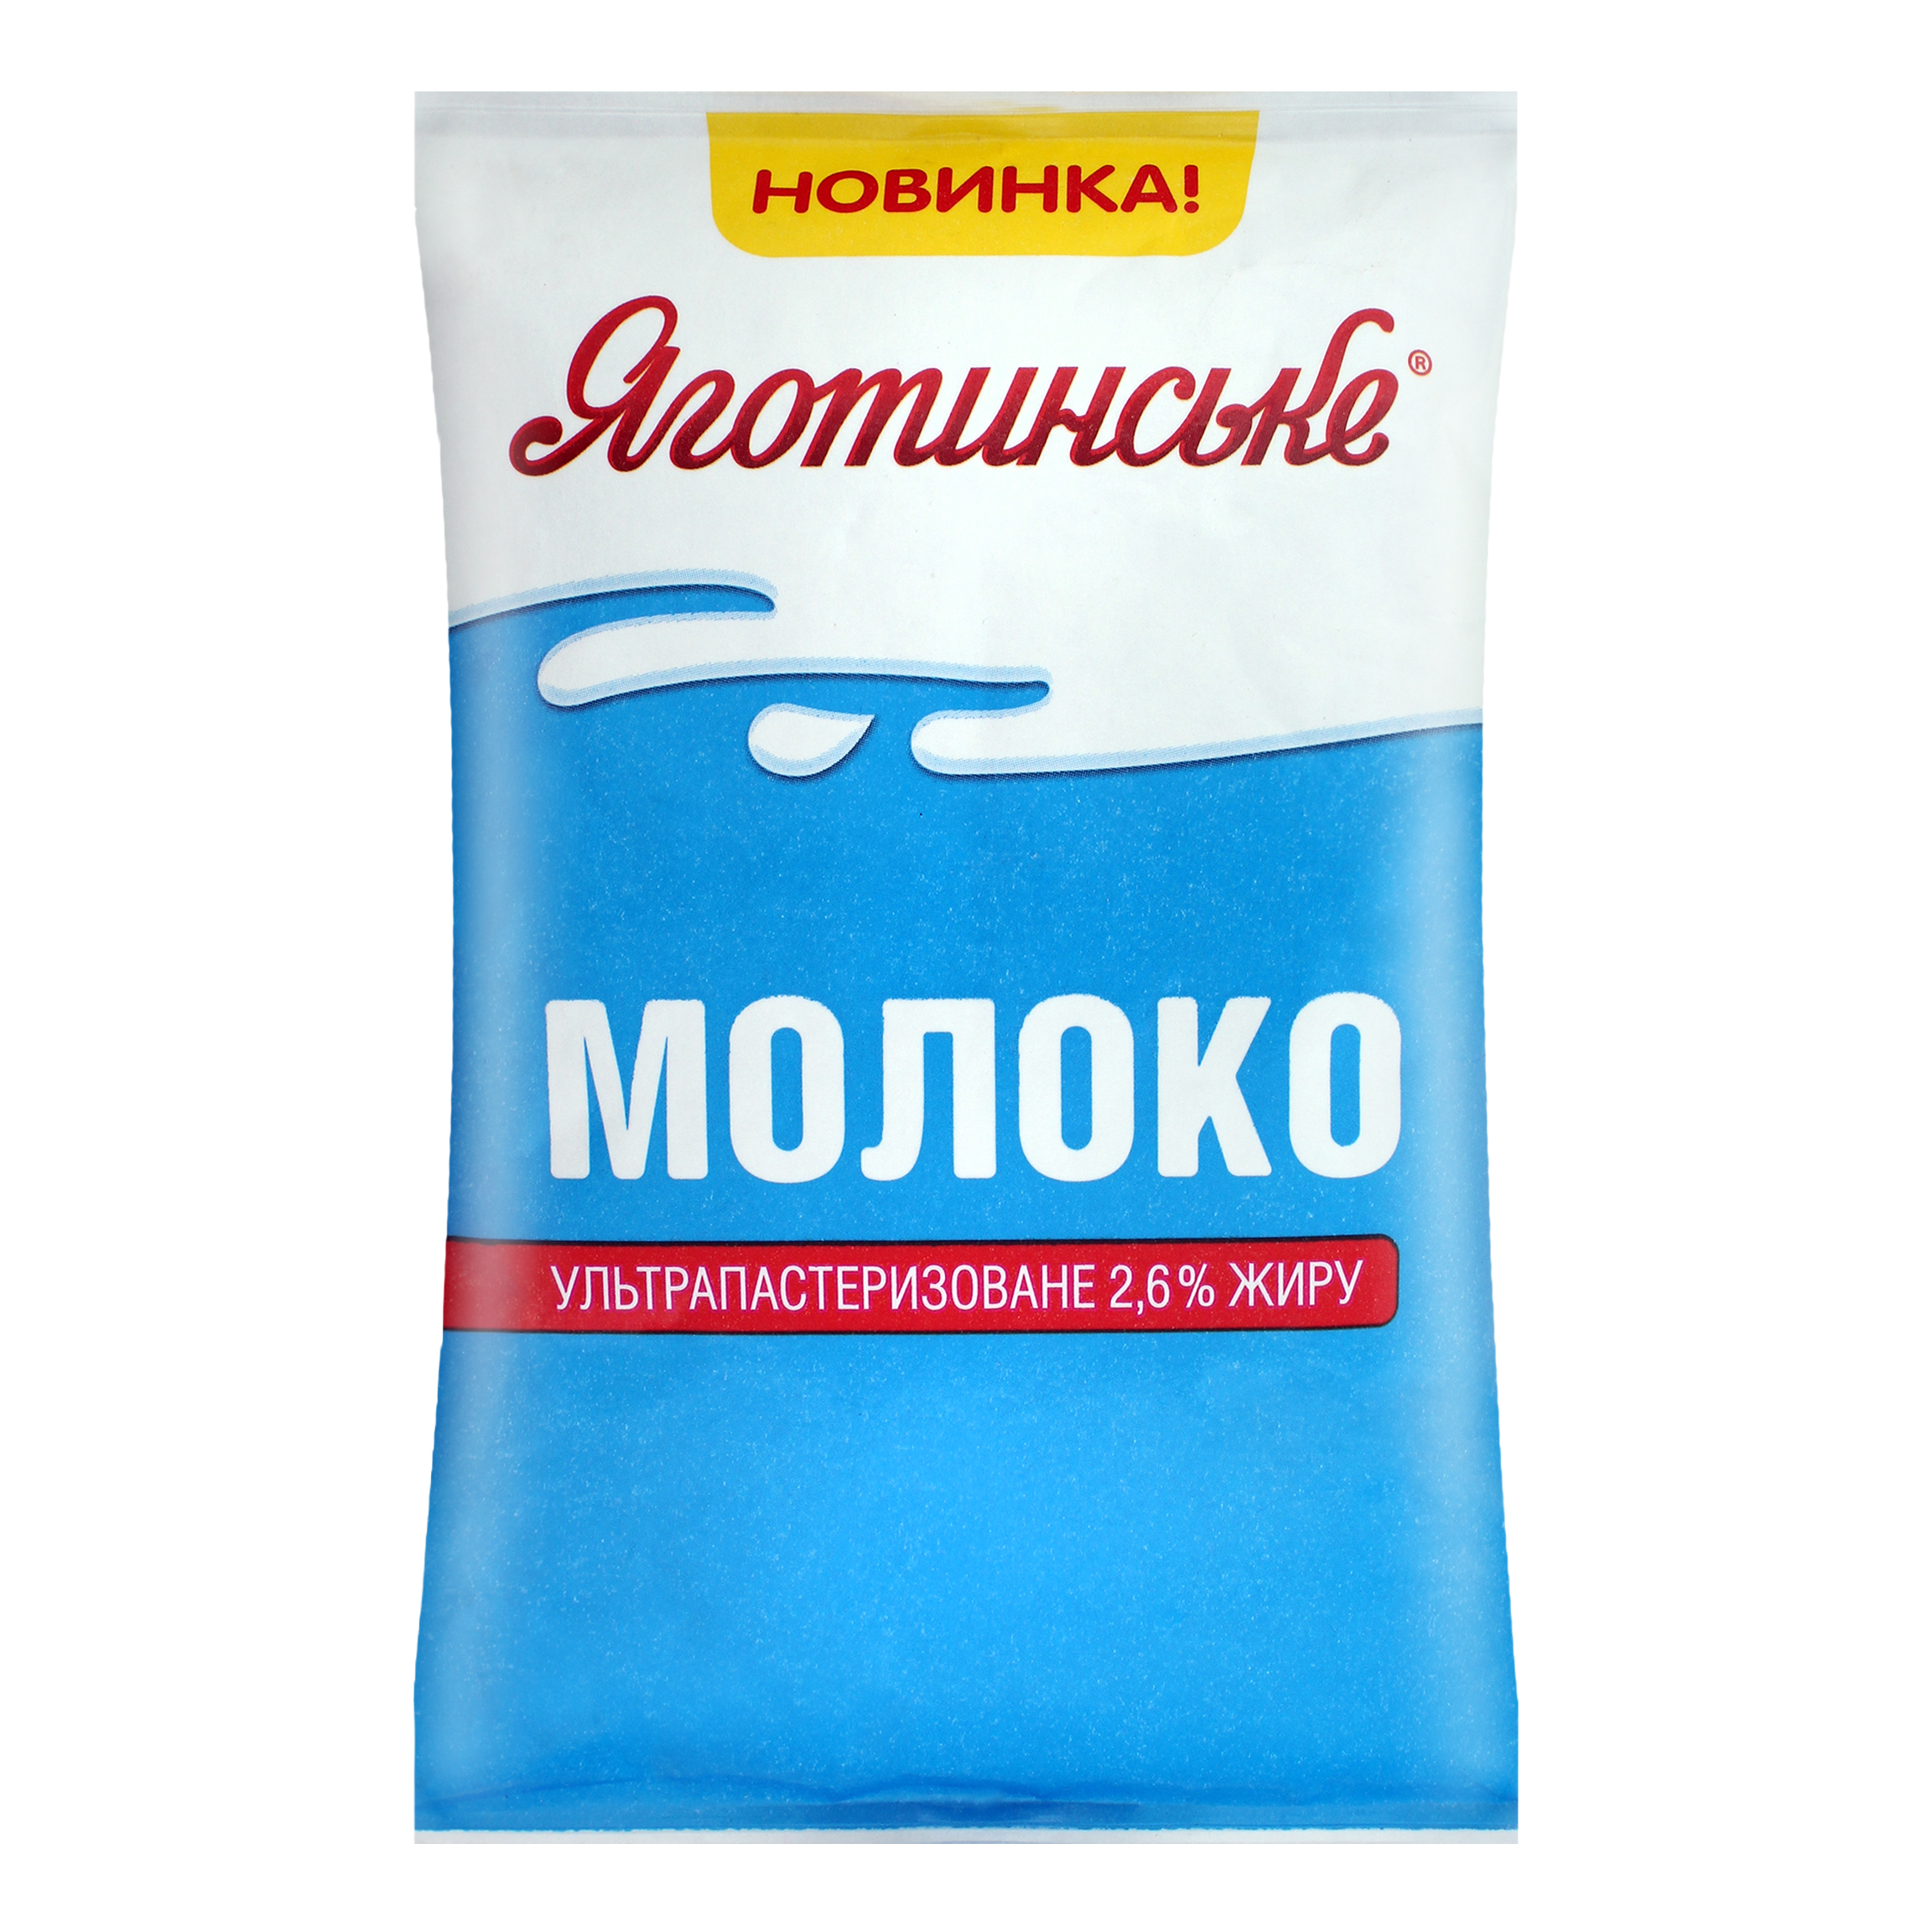 Ultrapasteurized milk Yahotynske 2,6% 900g